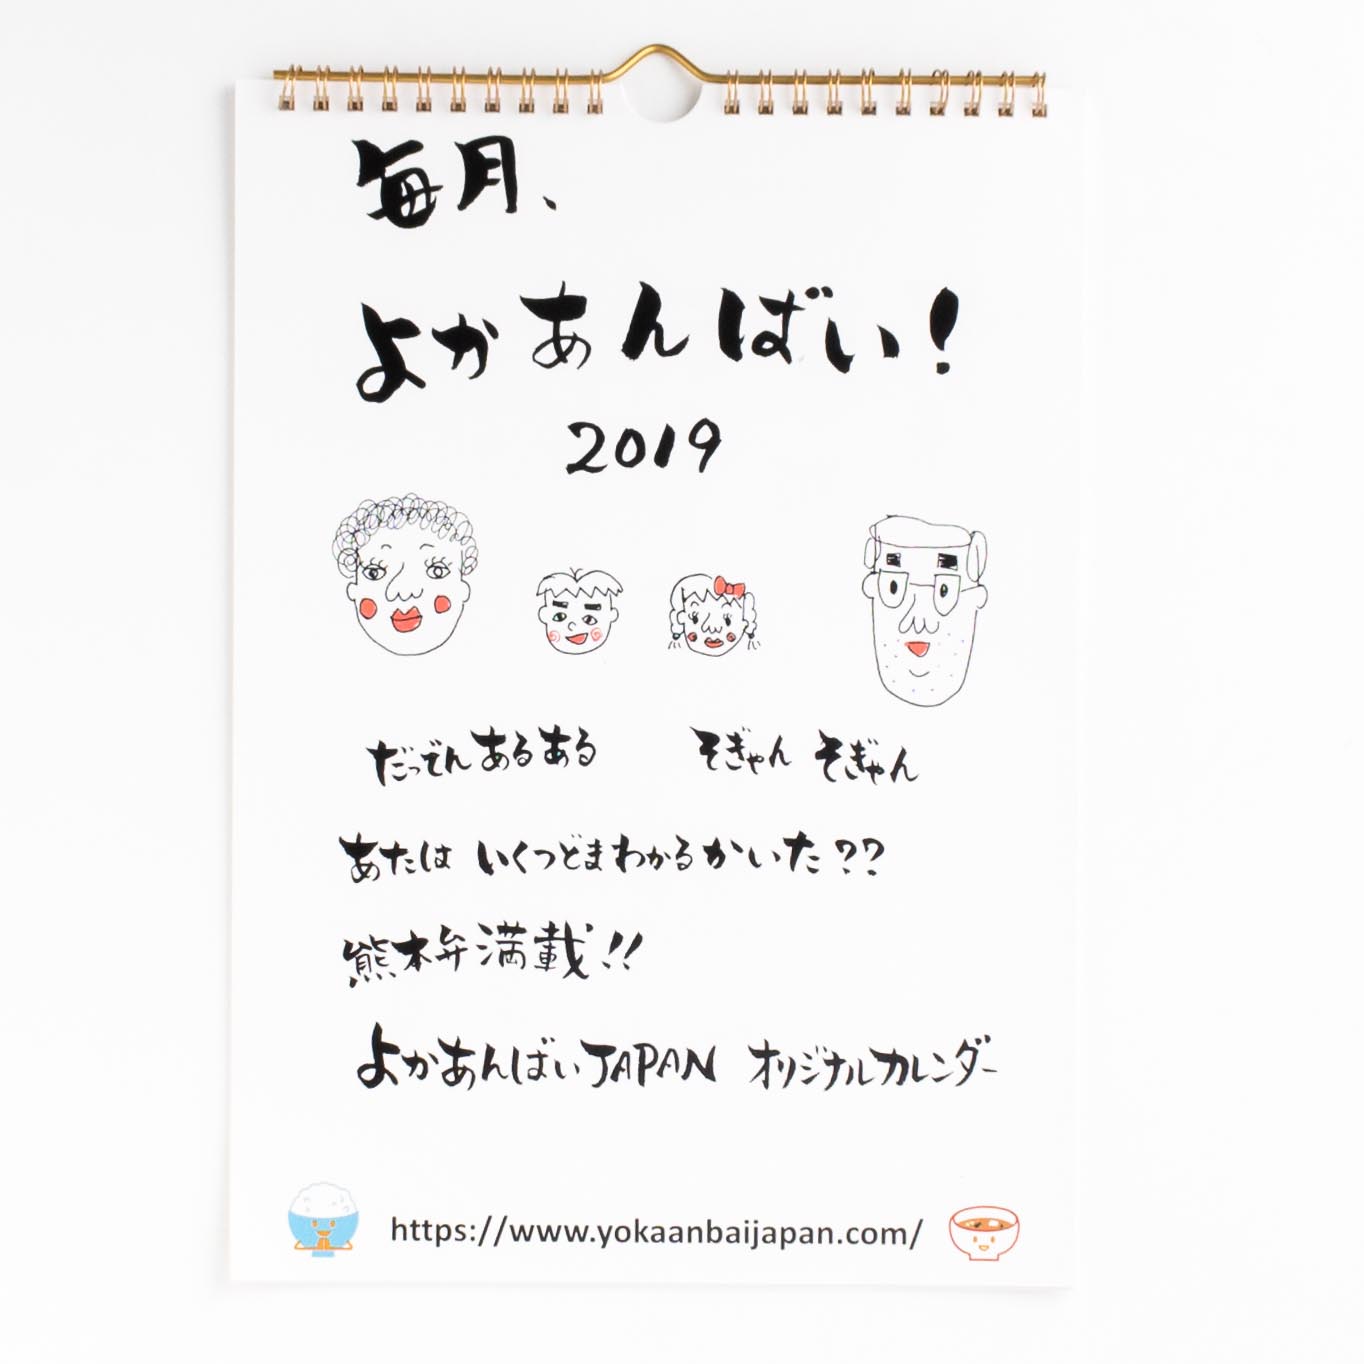 「中村  あゆみ 様」製作のオリジナルカレンダー